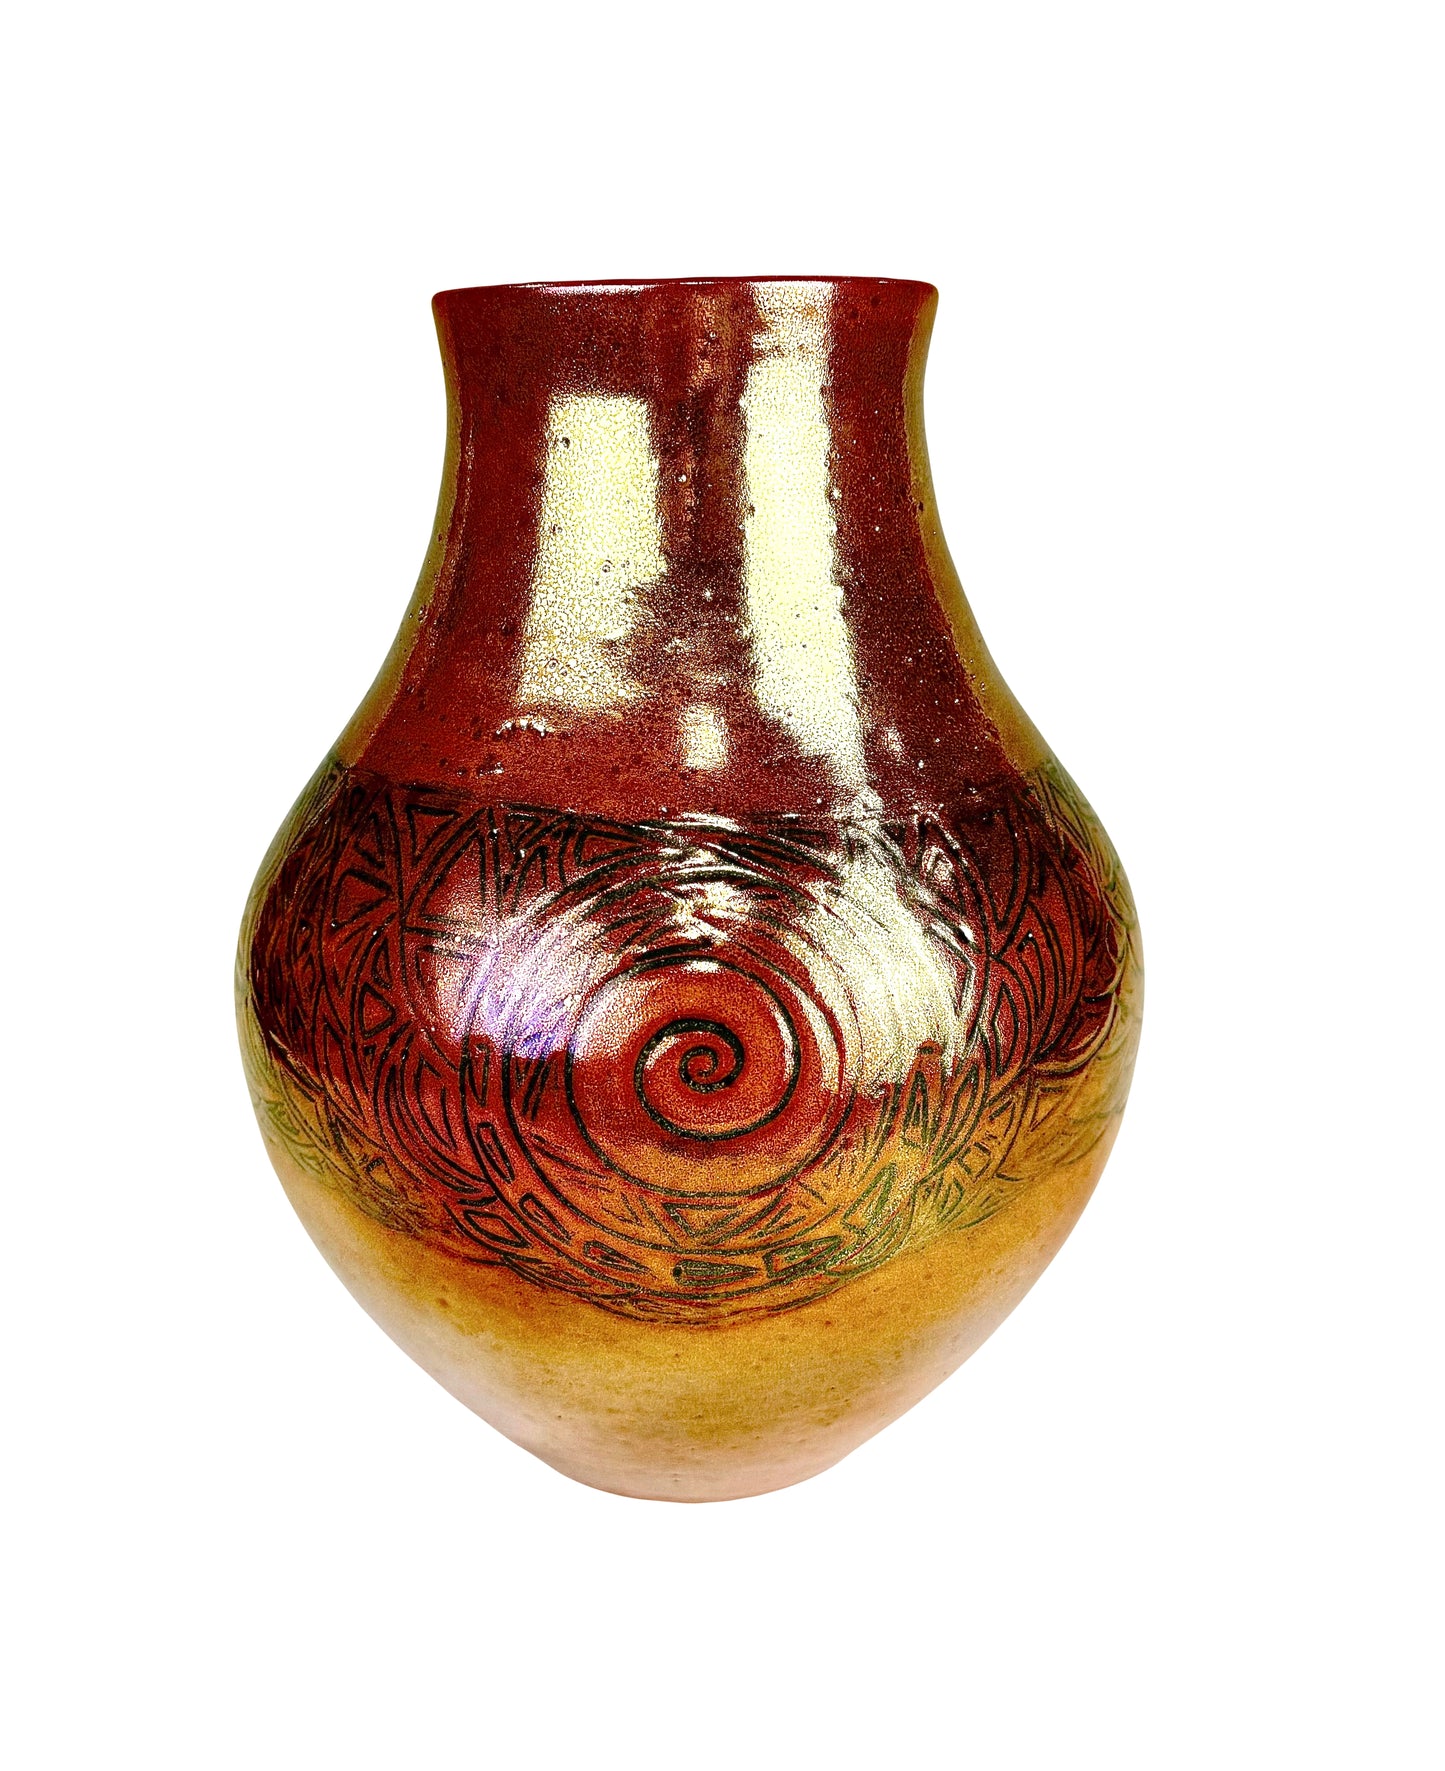 Honey Bronze Luster Glaze Vase with a Large Carved Cobalt Swirl Design